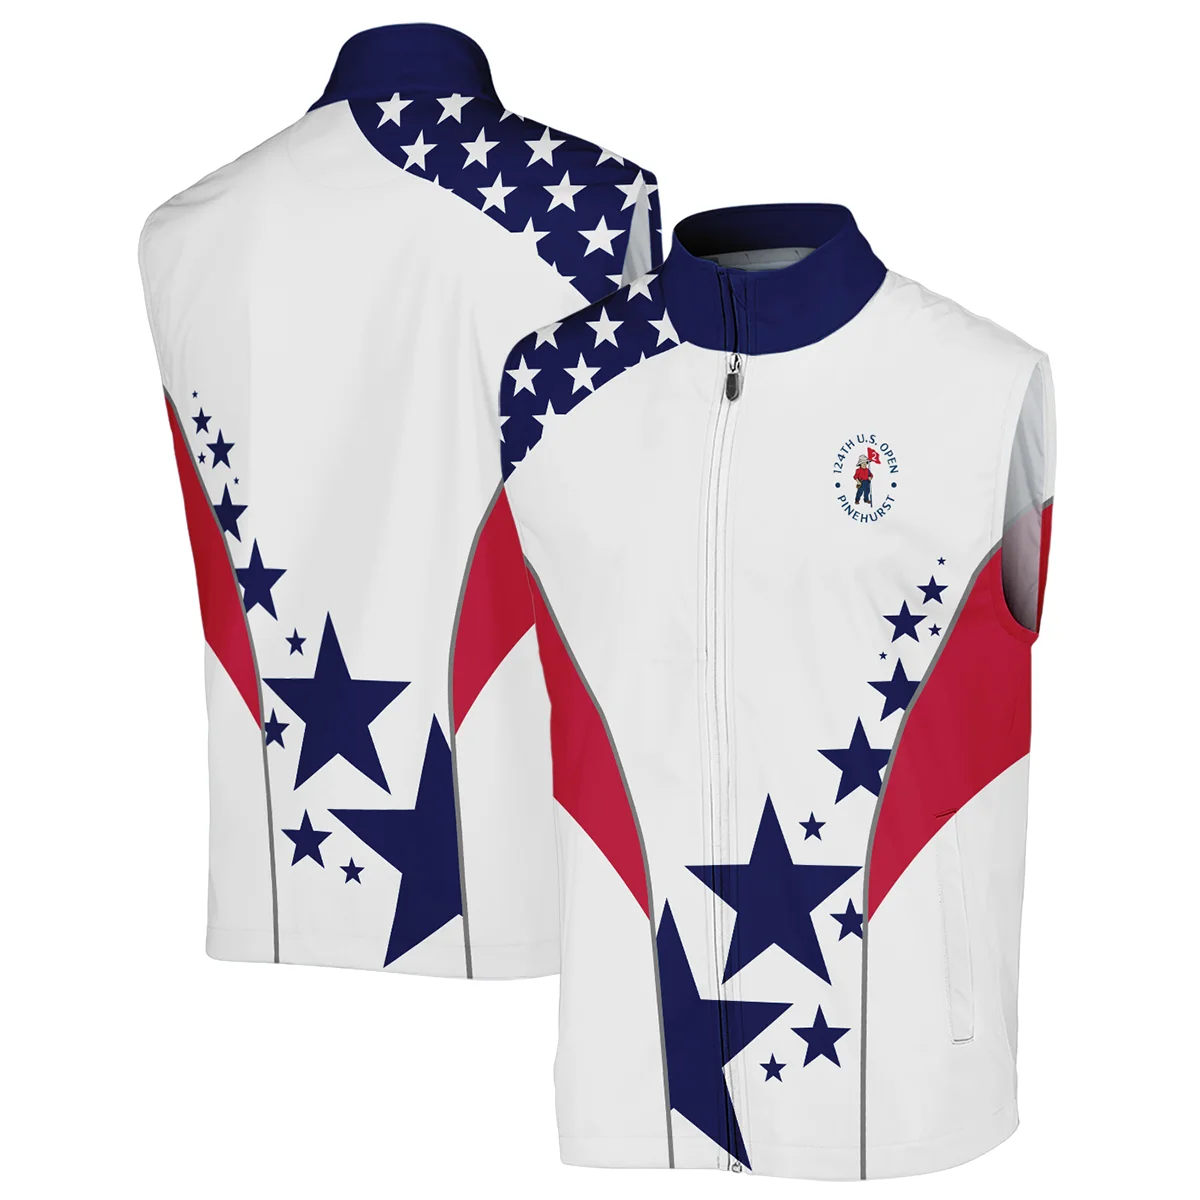 124th U.S. Open Pinehurst Rolex Stars US Flag White Blue Sleeveless Jacket Style Classic Sleeveless Jacket